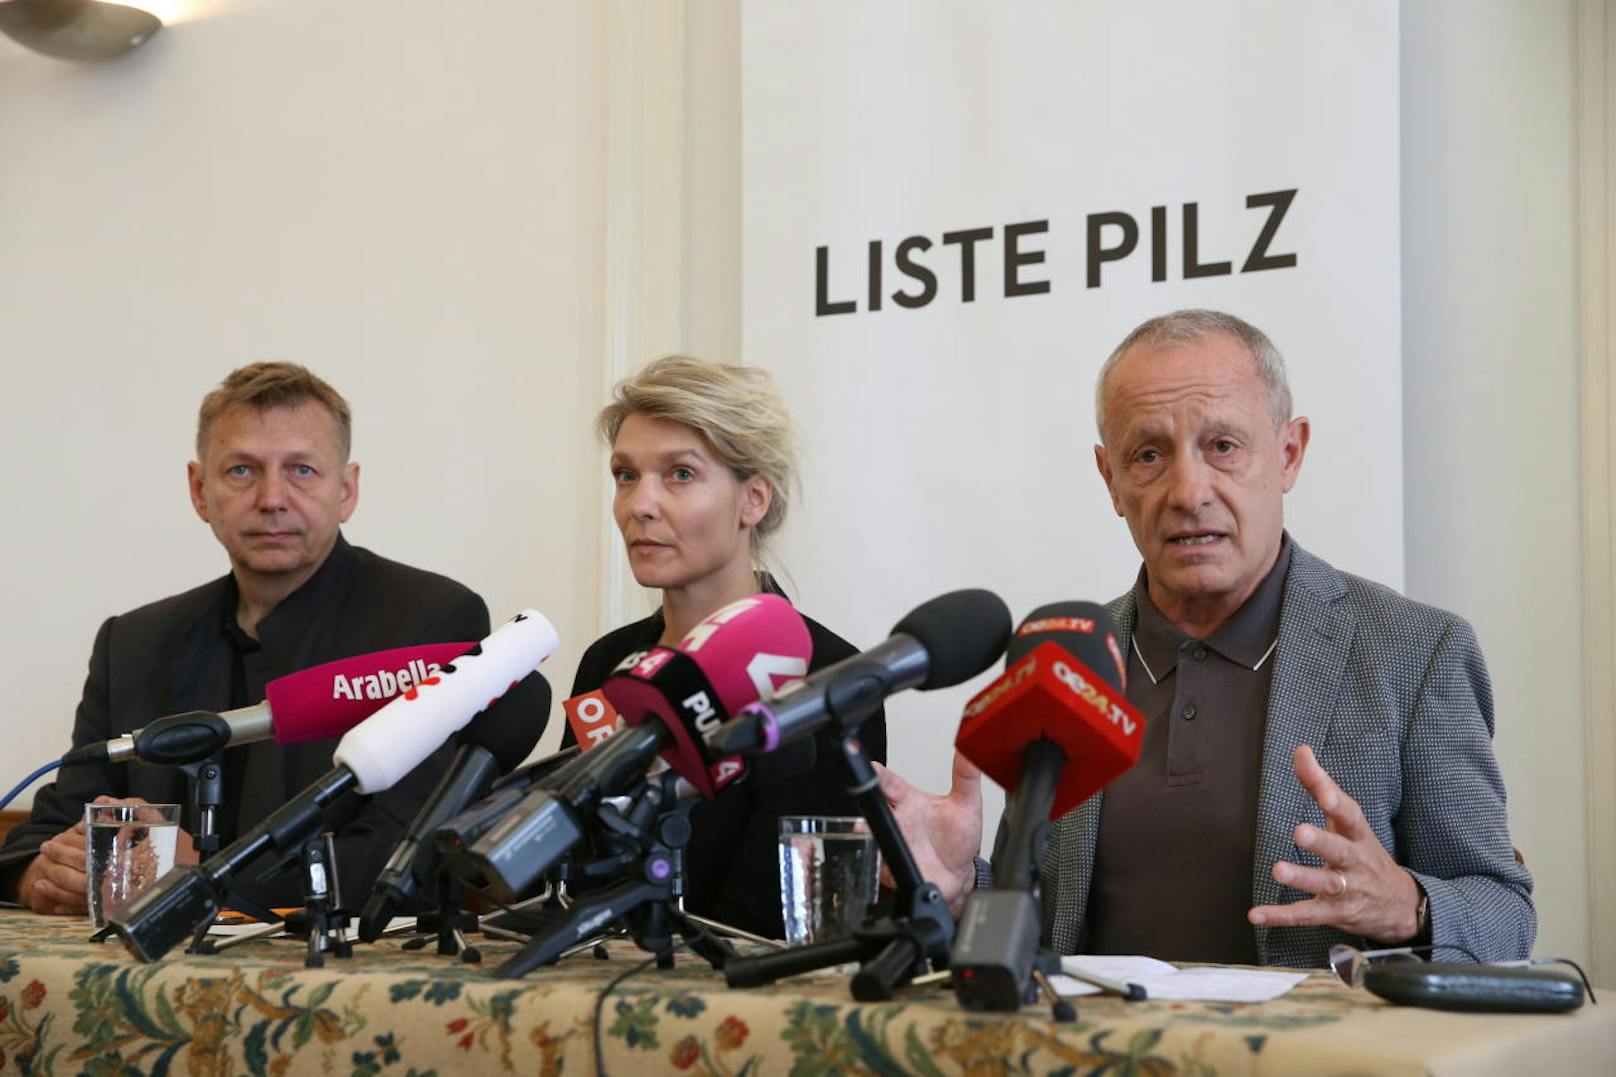 Pressekonferenz "Personelles zur Liste Pilz" mit Peter Pilz, Maria Stern und Wolfgang Zinggl.